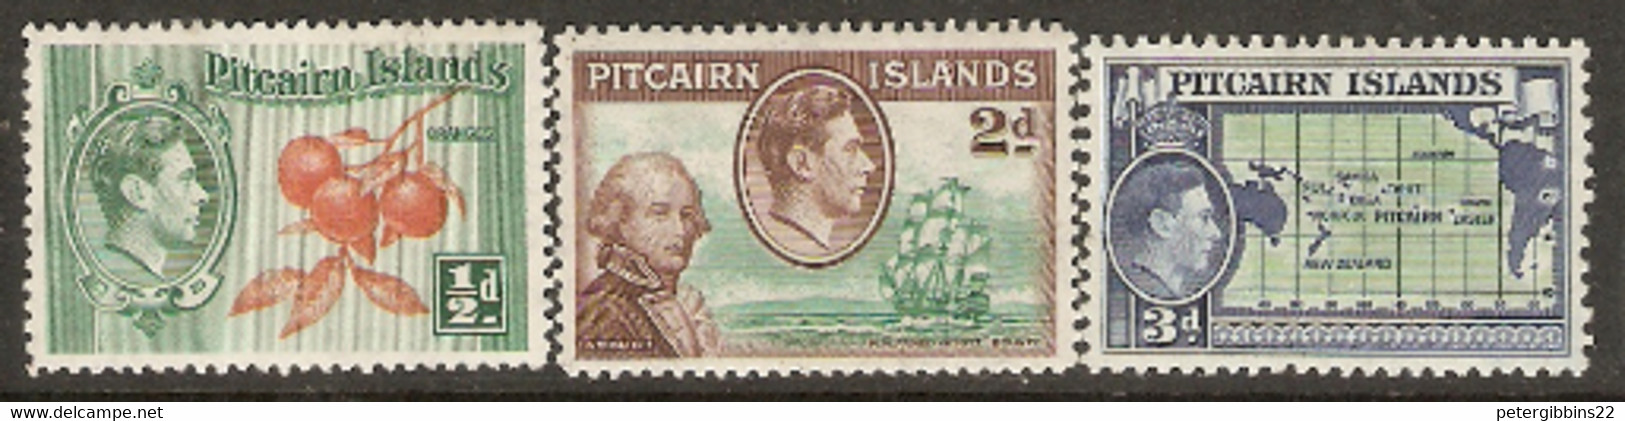 Pitcairn Islands 1940   SG 1,3,4  Unmounted Mint - Pitcairn Islands